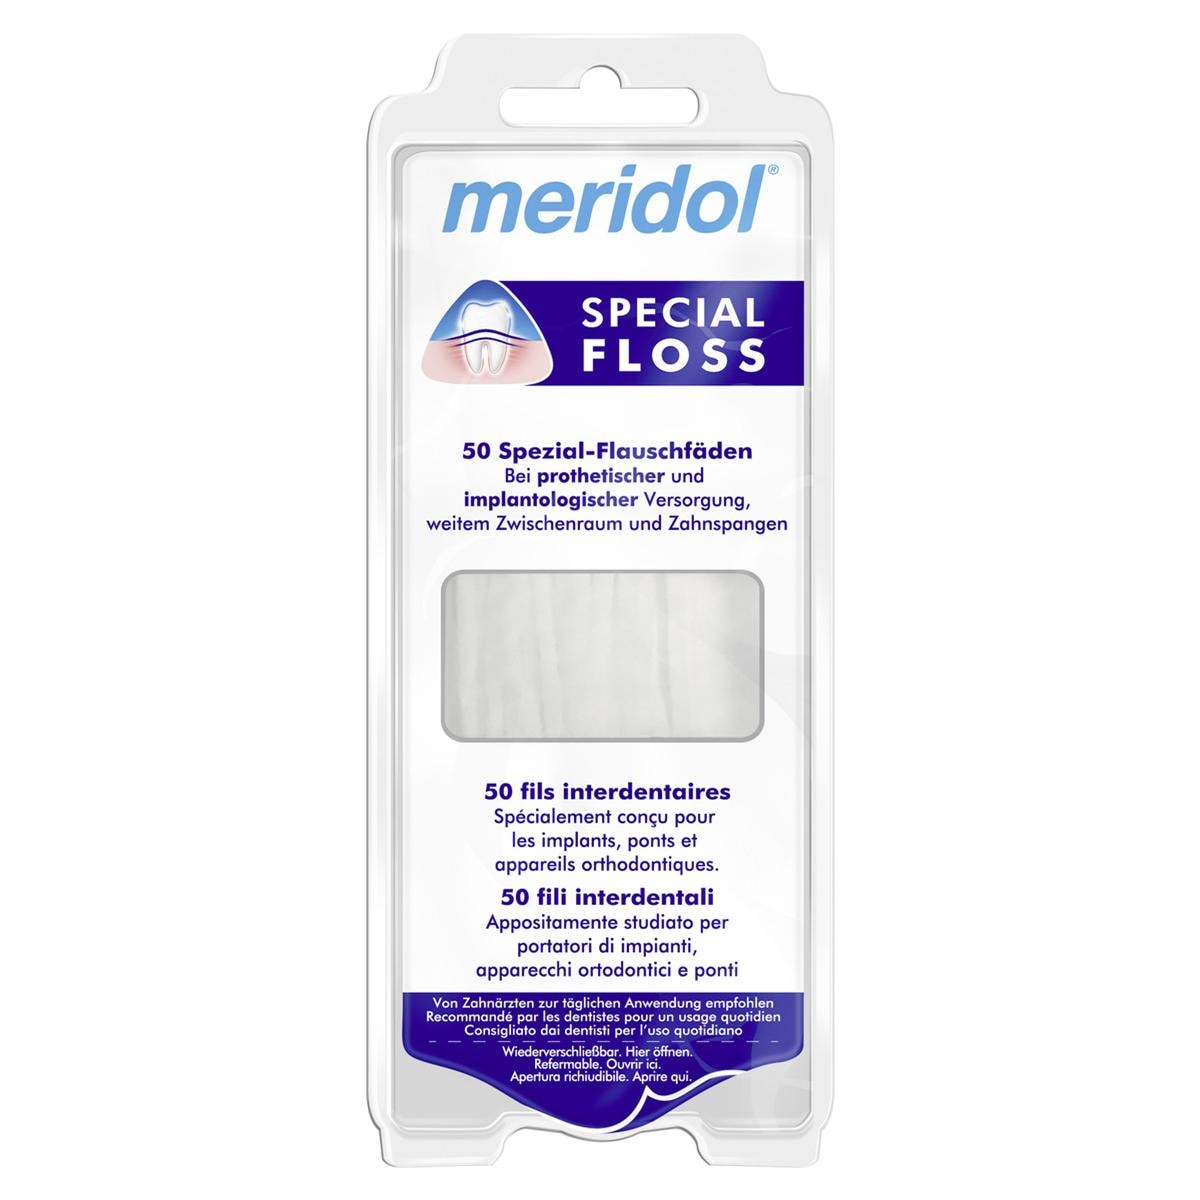 meridol® SPECIAL FLOSS - Packung 50 Fäden